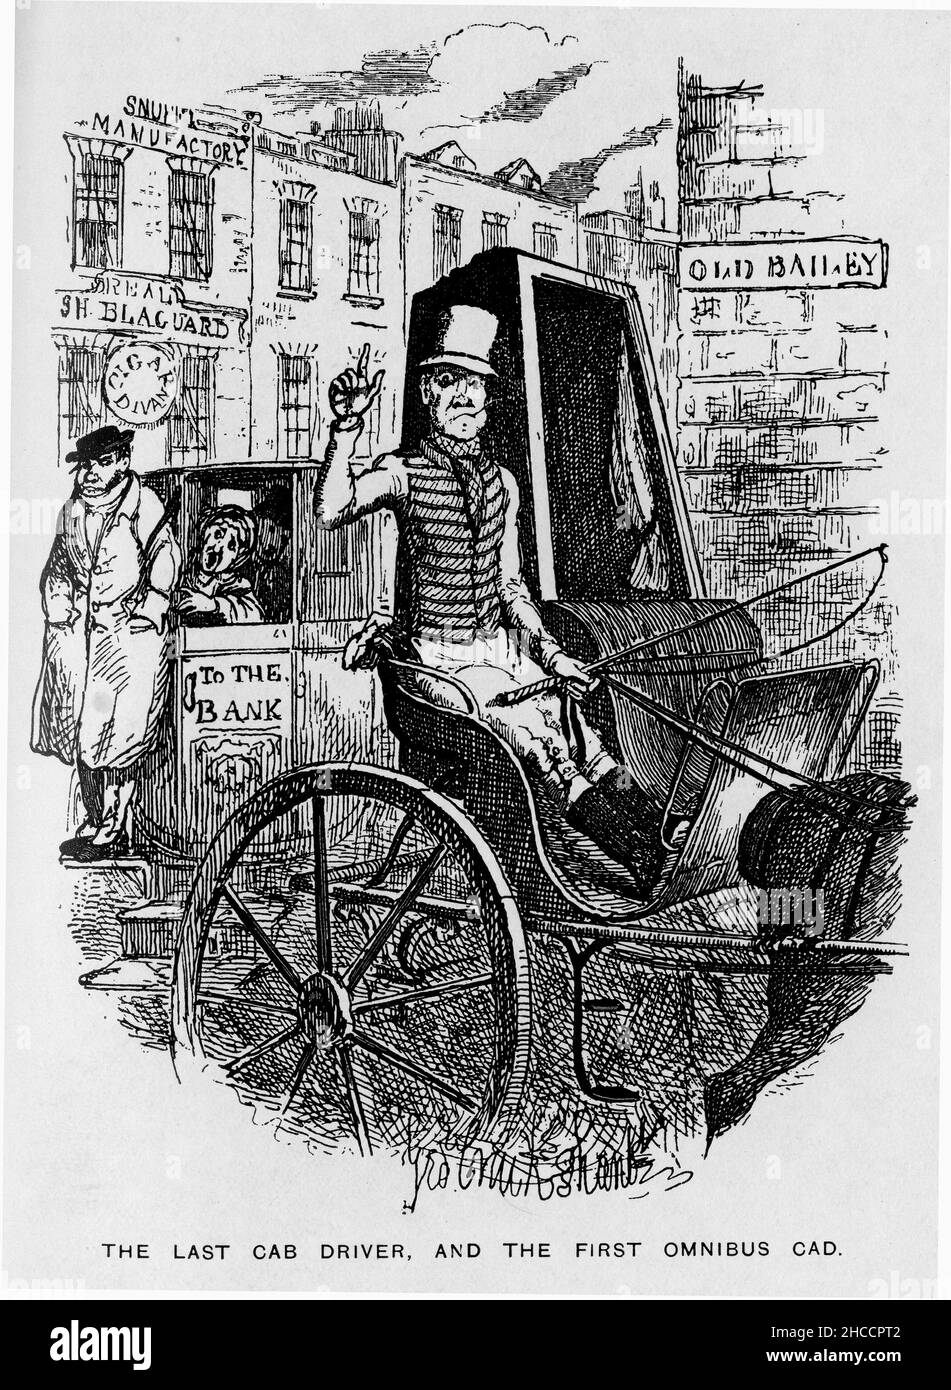 Incisione dell'ultimo tassista, e del primo cad omnibus. Una scena da un libro di epoca vittoriana di Charles Dickens, pubblicato circa 1908 Foto Stock